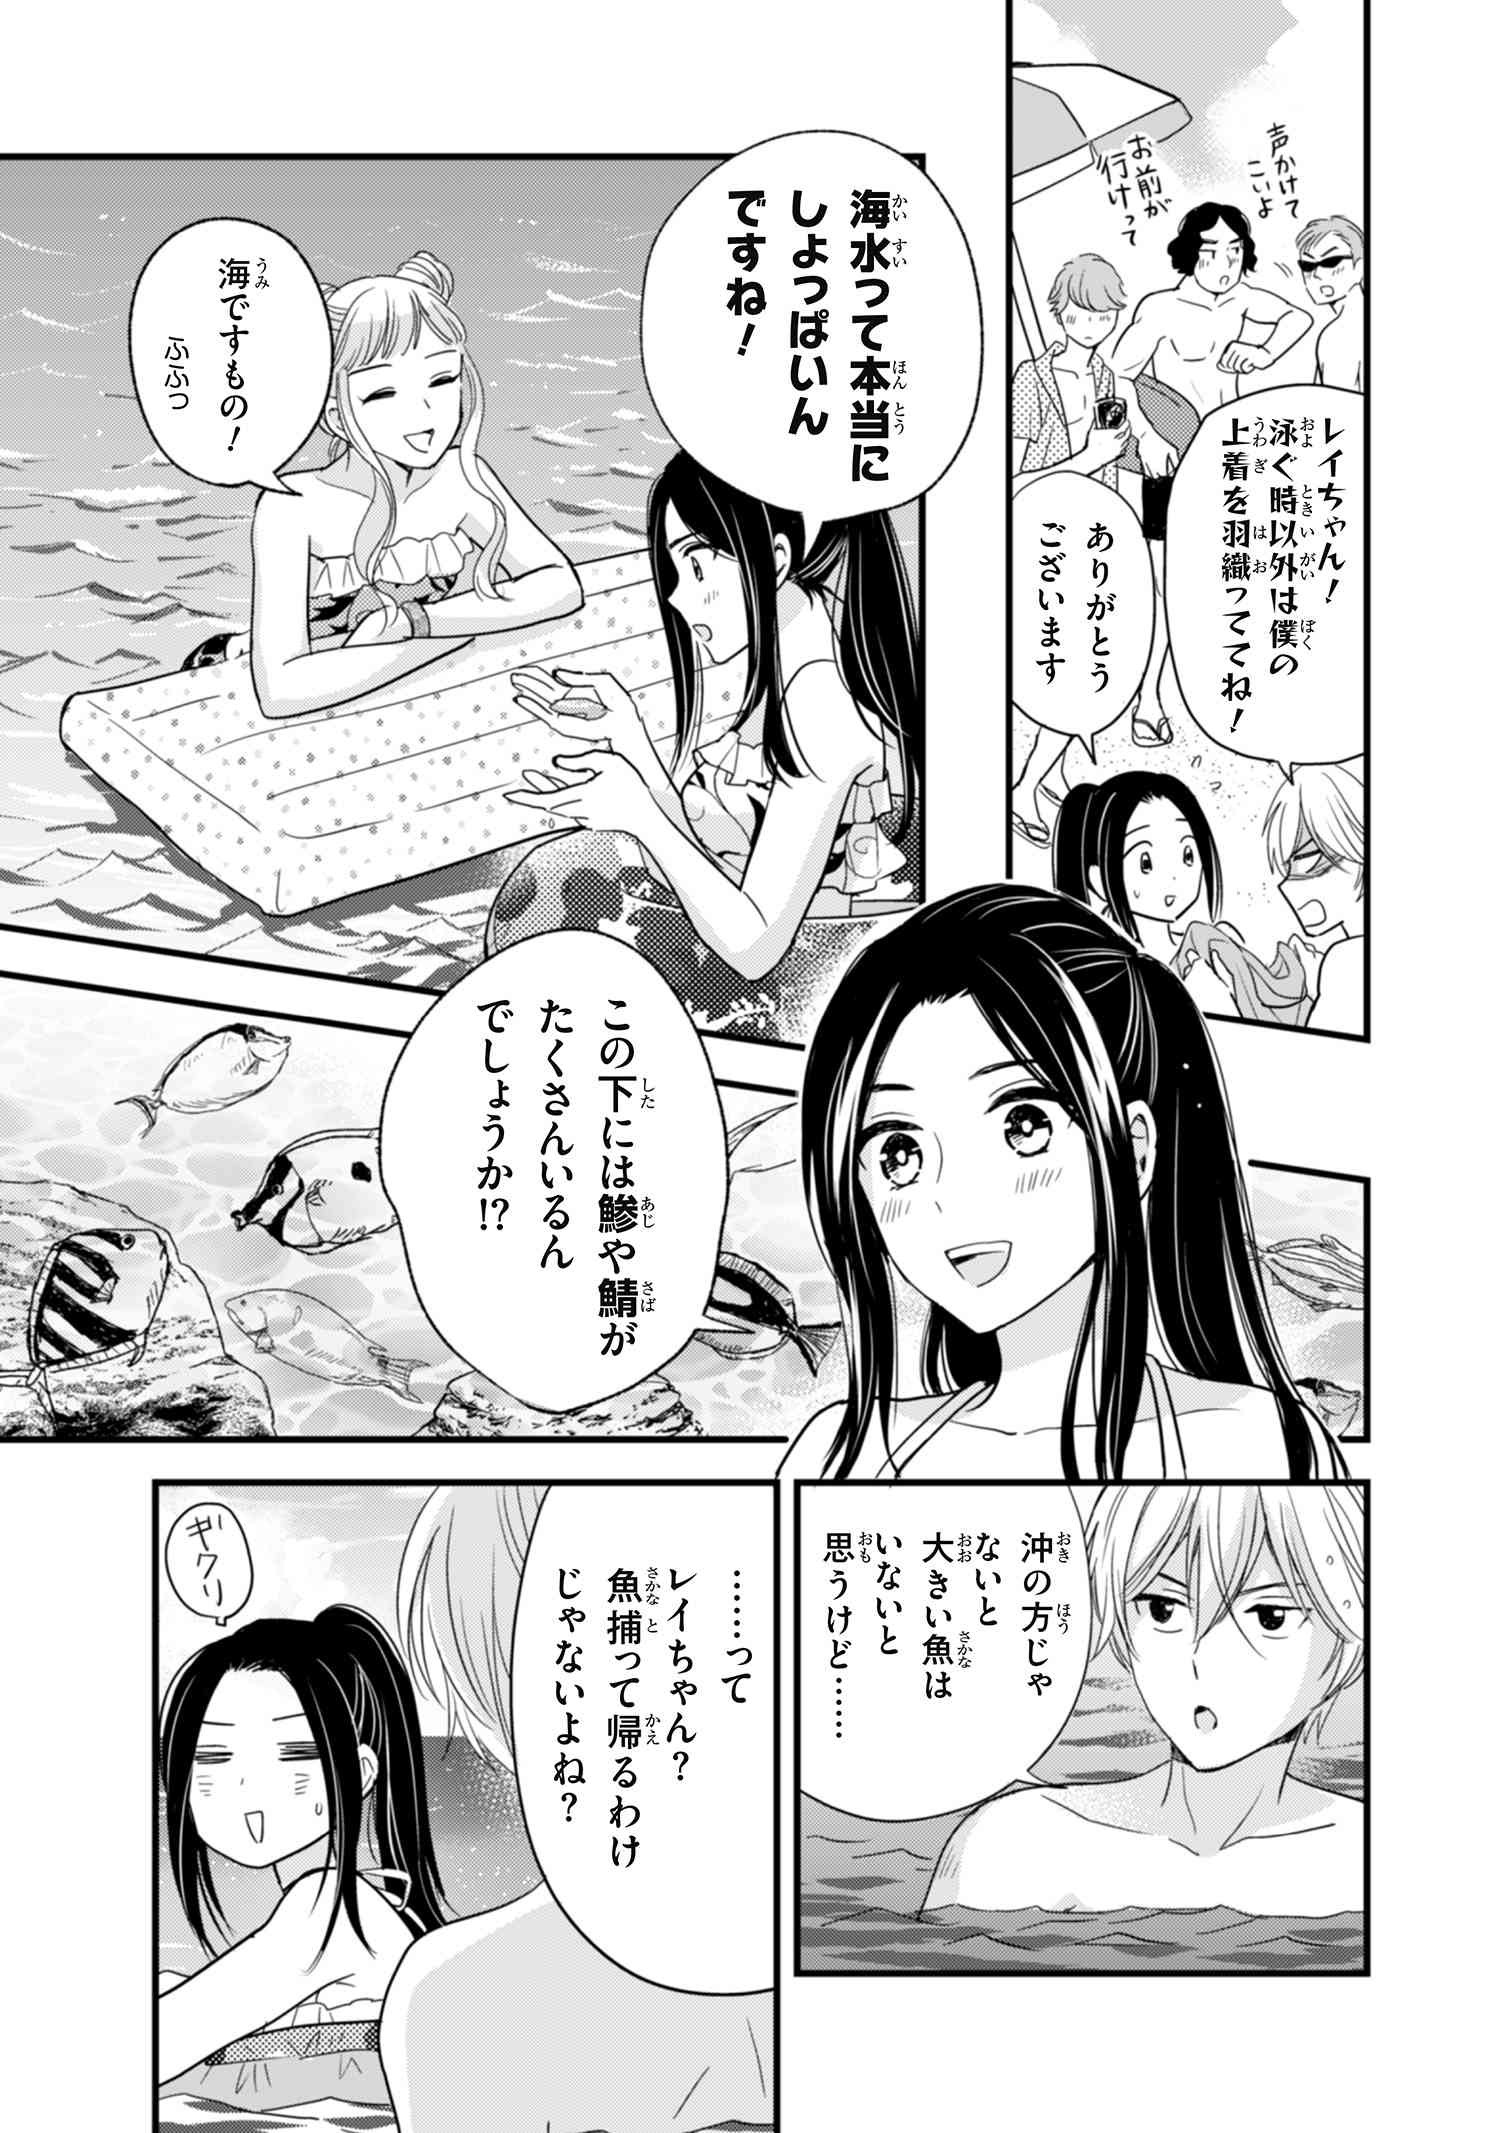 Reiko no Fuugi Akuyaku Reijou to Yobarete imasu ga, tada no Binbou Musume desu - Chapter 12.2 - Page 2